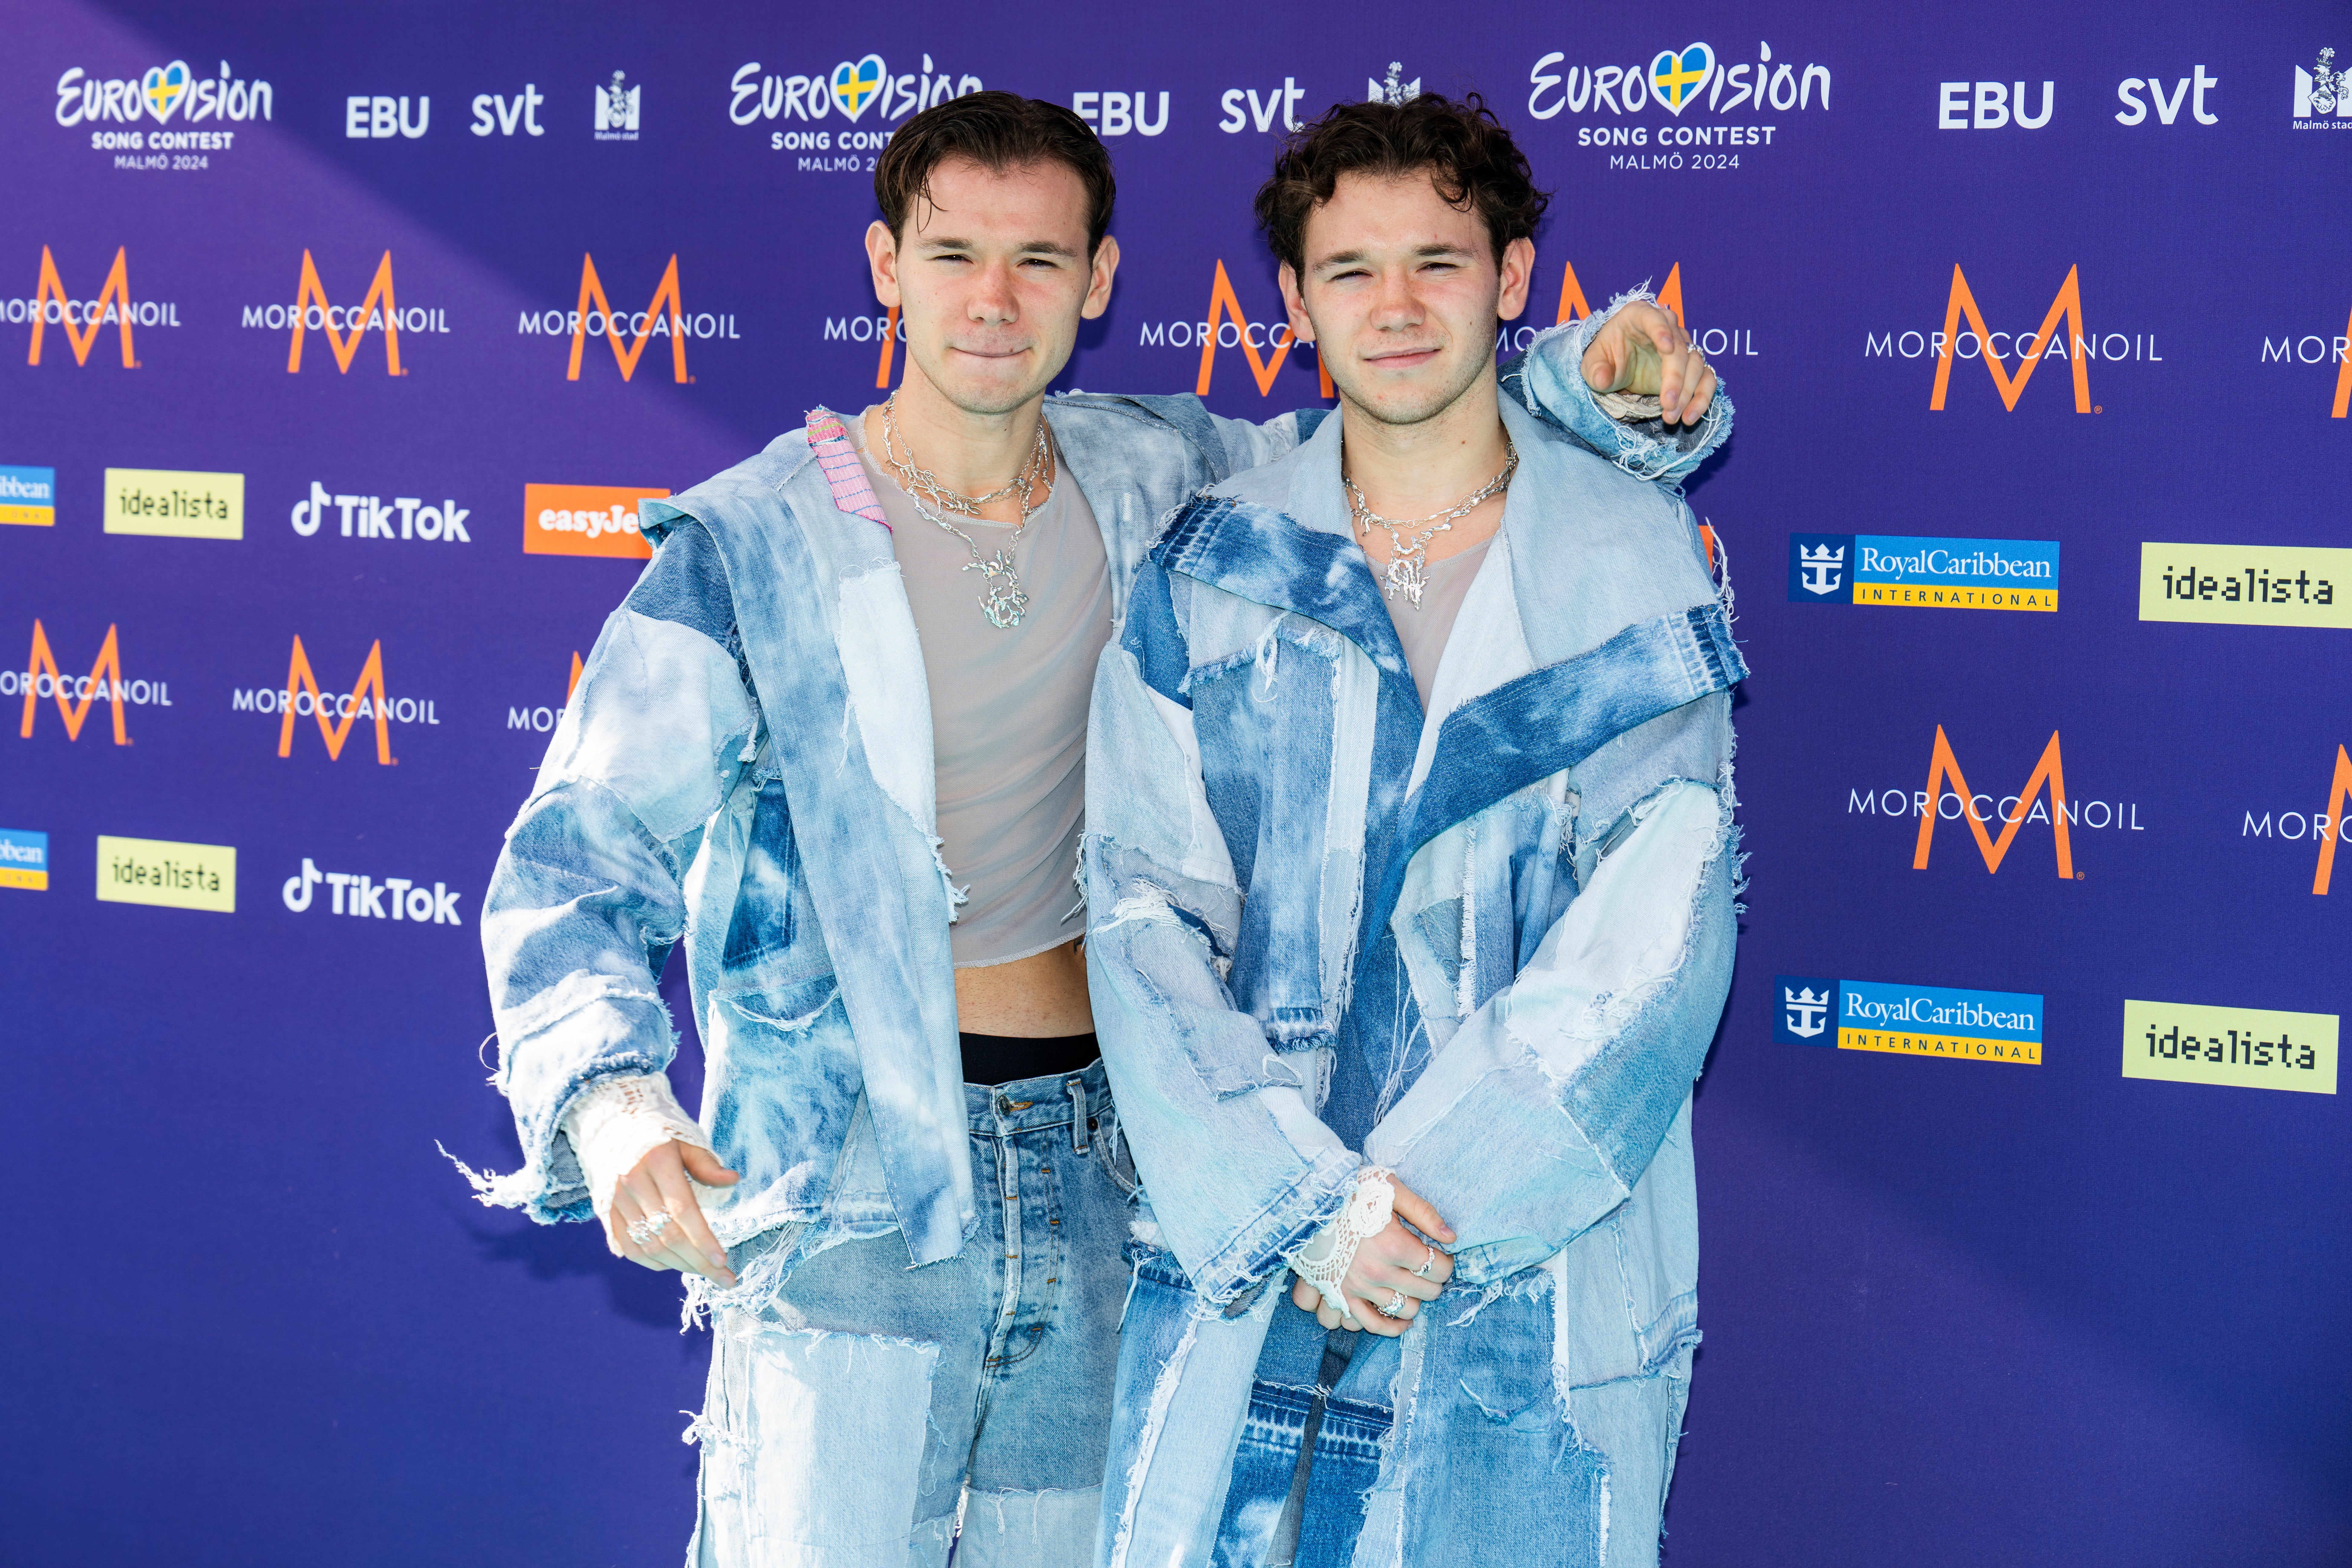 Sweden’s Eurovision 2024 delegates Marcus & Martinus